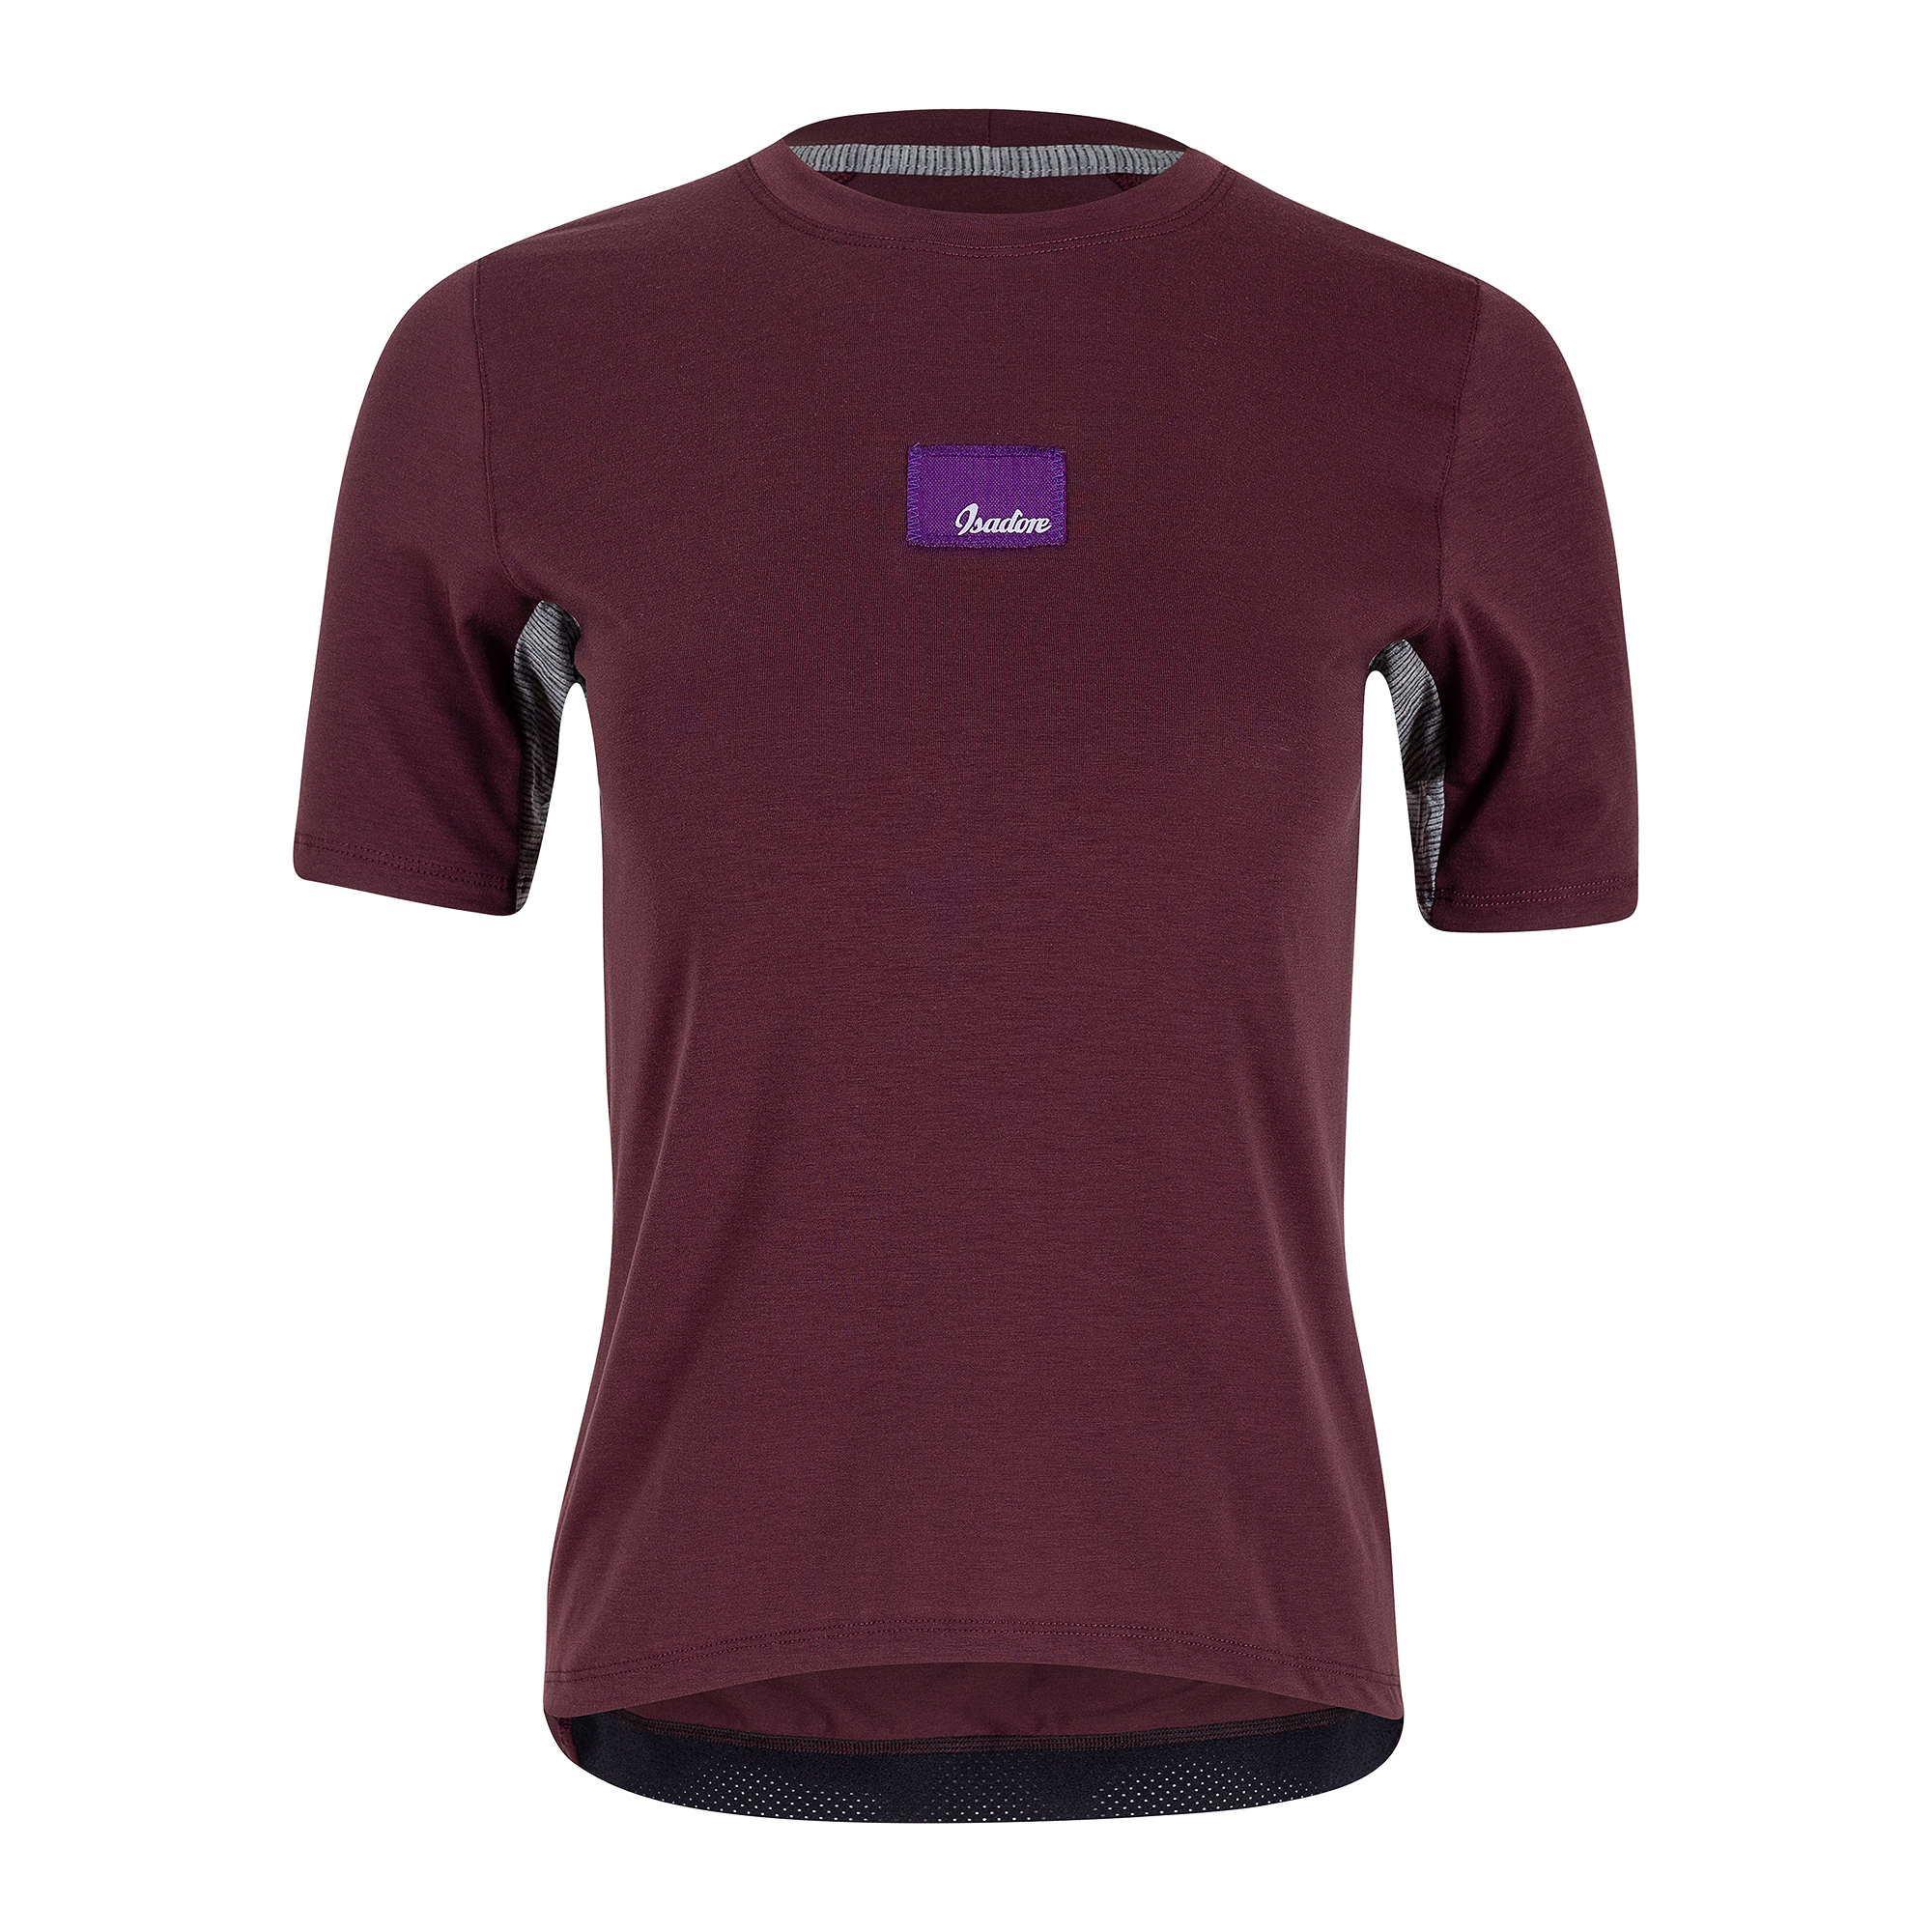 Women's Off-road Tech T-Shirt Burgundy